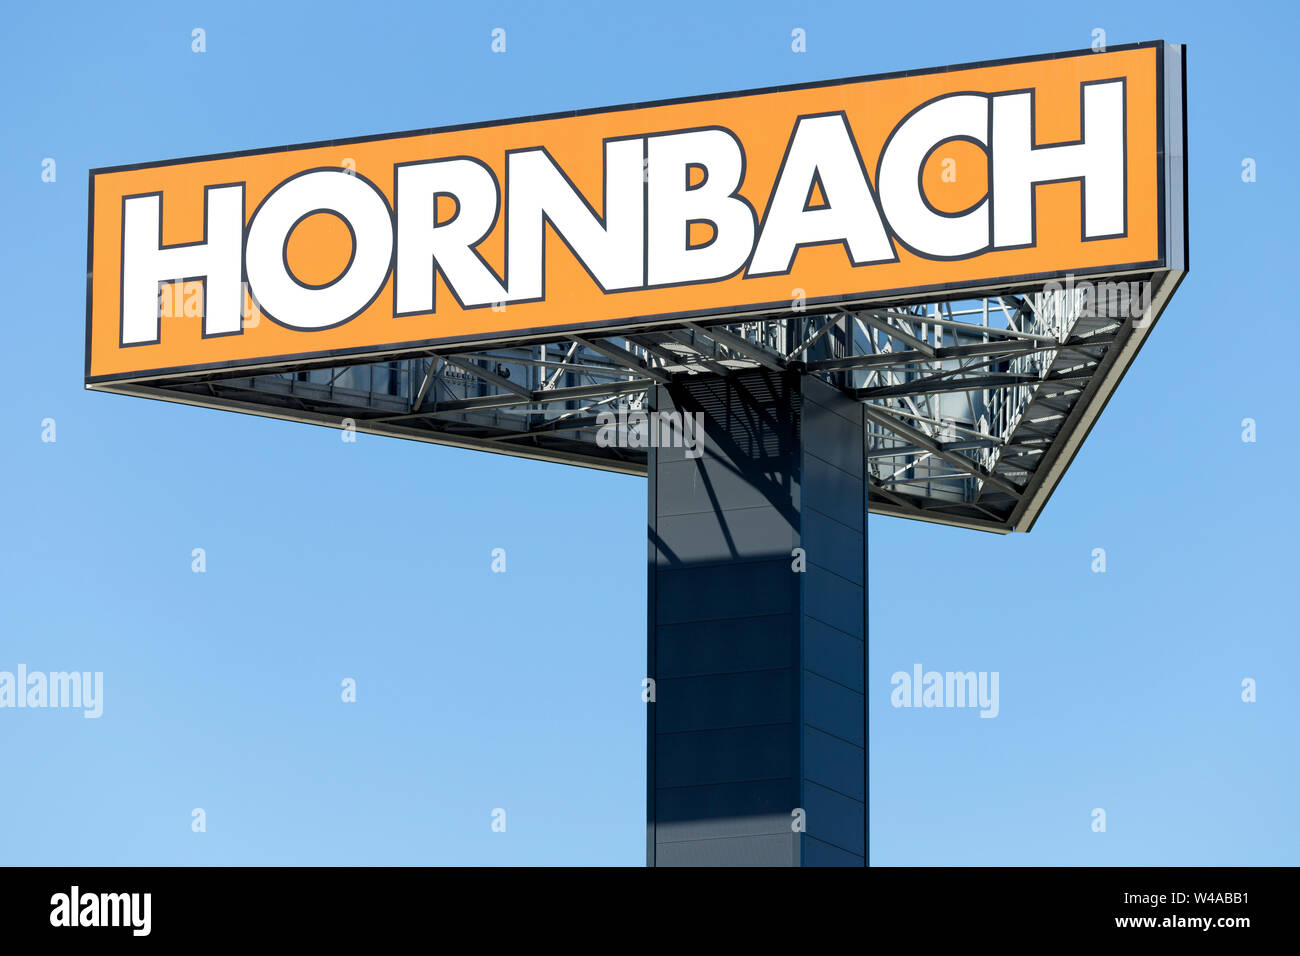 Hornbach firmar contra el cielo azul. Hornbach es una cadena de tiendas de bricolaje alemán ofrece mejoras del hogar y bricolaje mercancías. Foto de stock